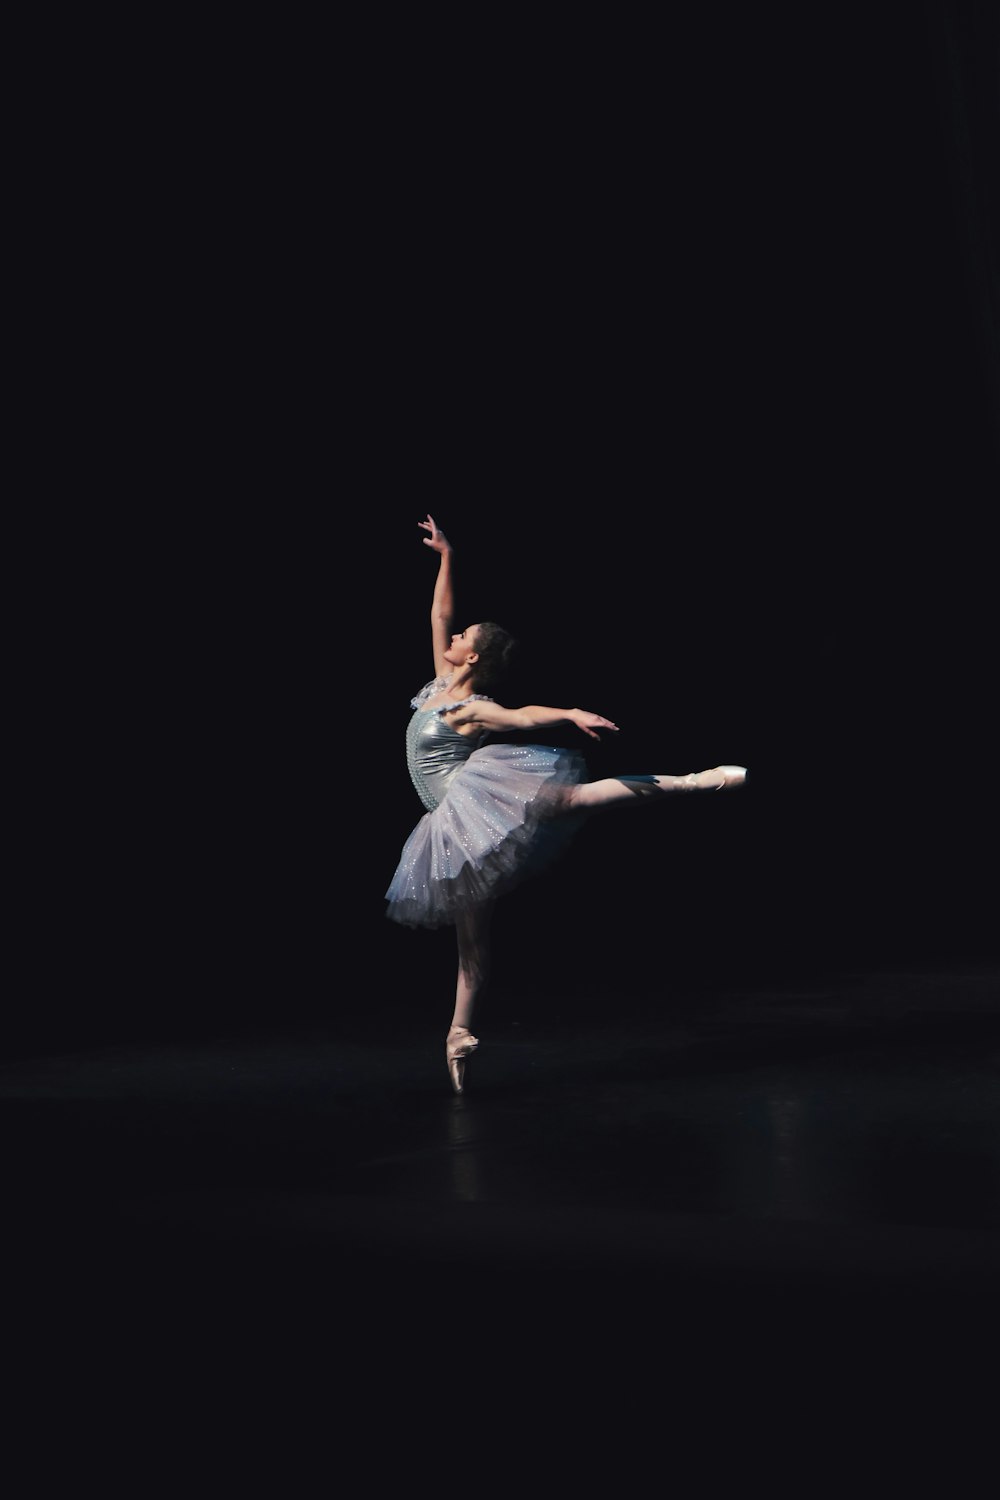 fotografía de bailarina bailando